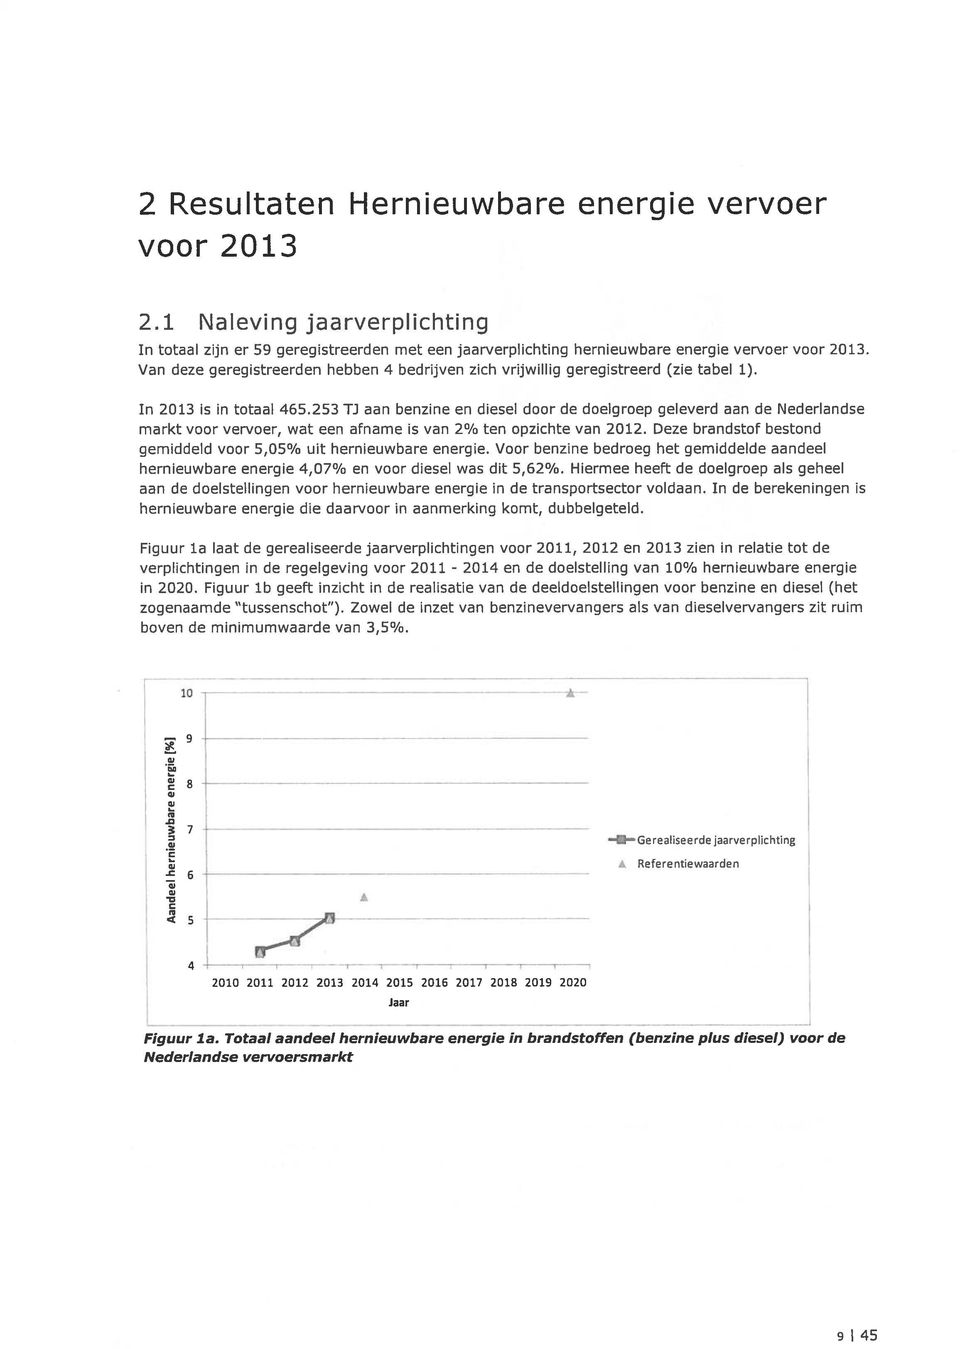 253 TJ aan benzine en diesel door de doelgroep geleverd aan de Nederlandse markt voor vervoer, wat een afname is van 2% ten opzichte van 2012.